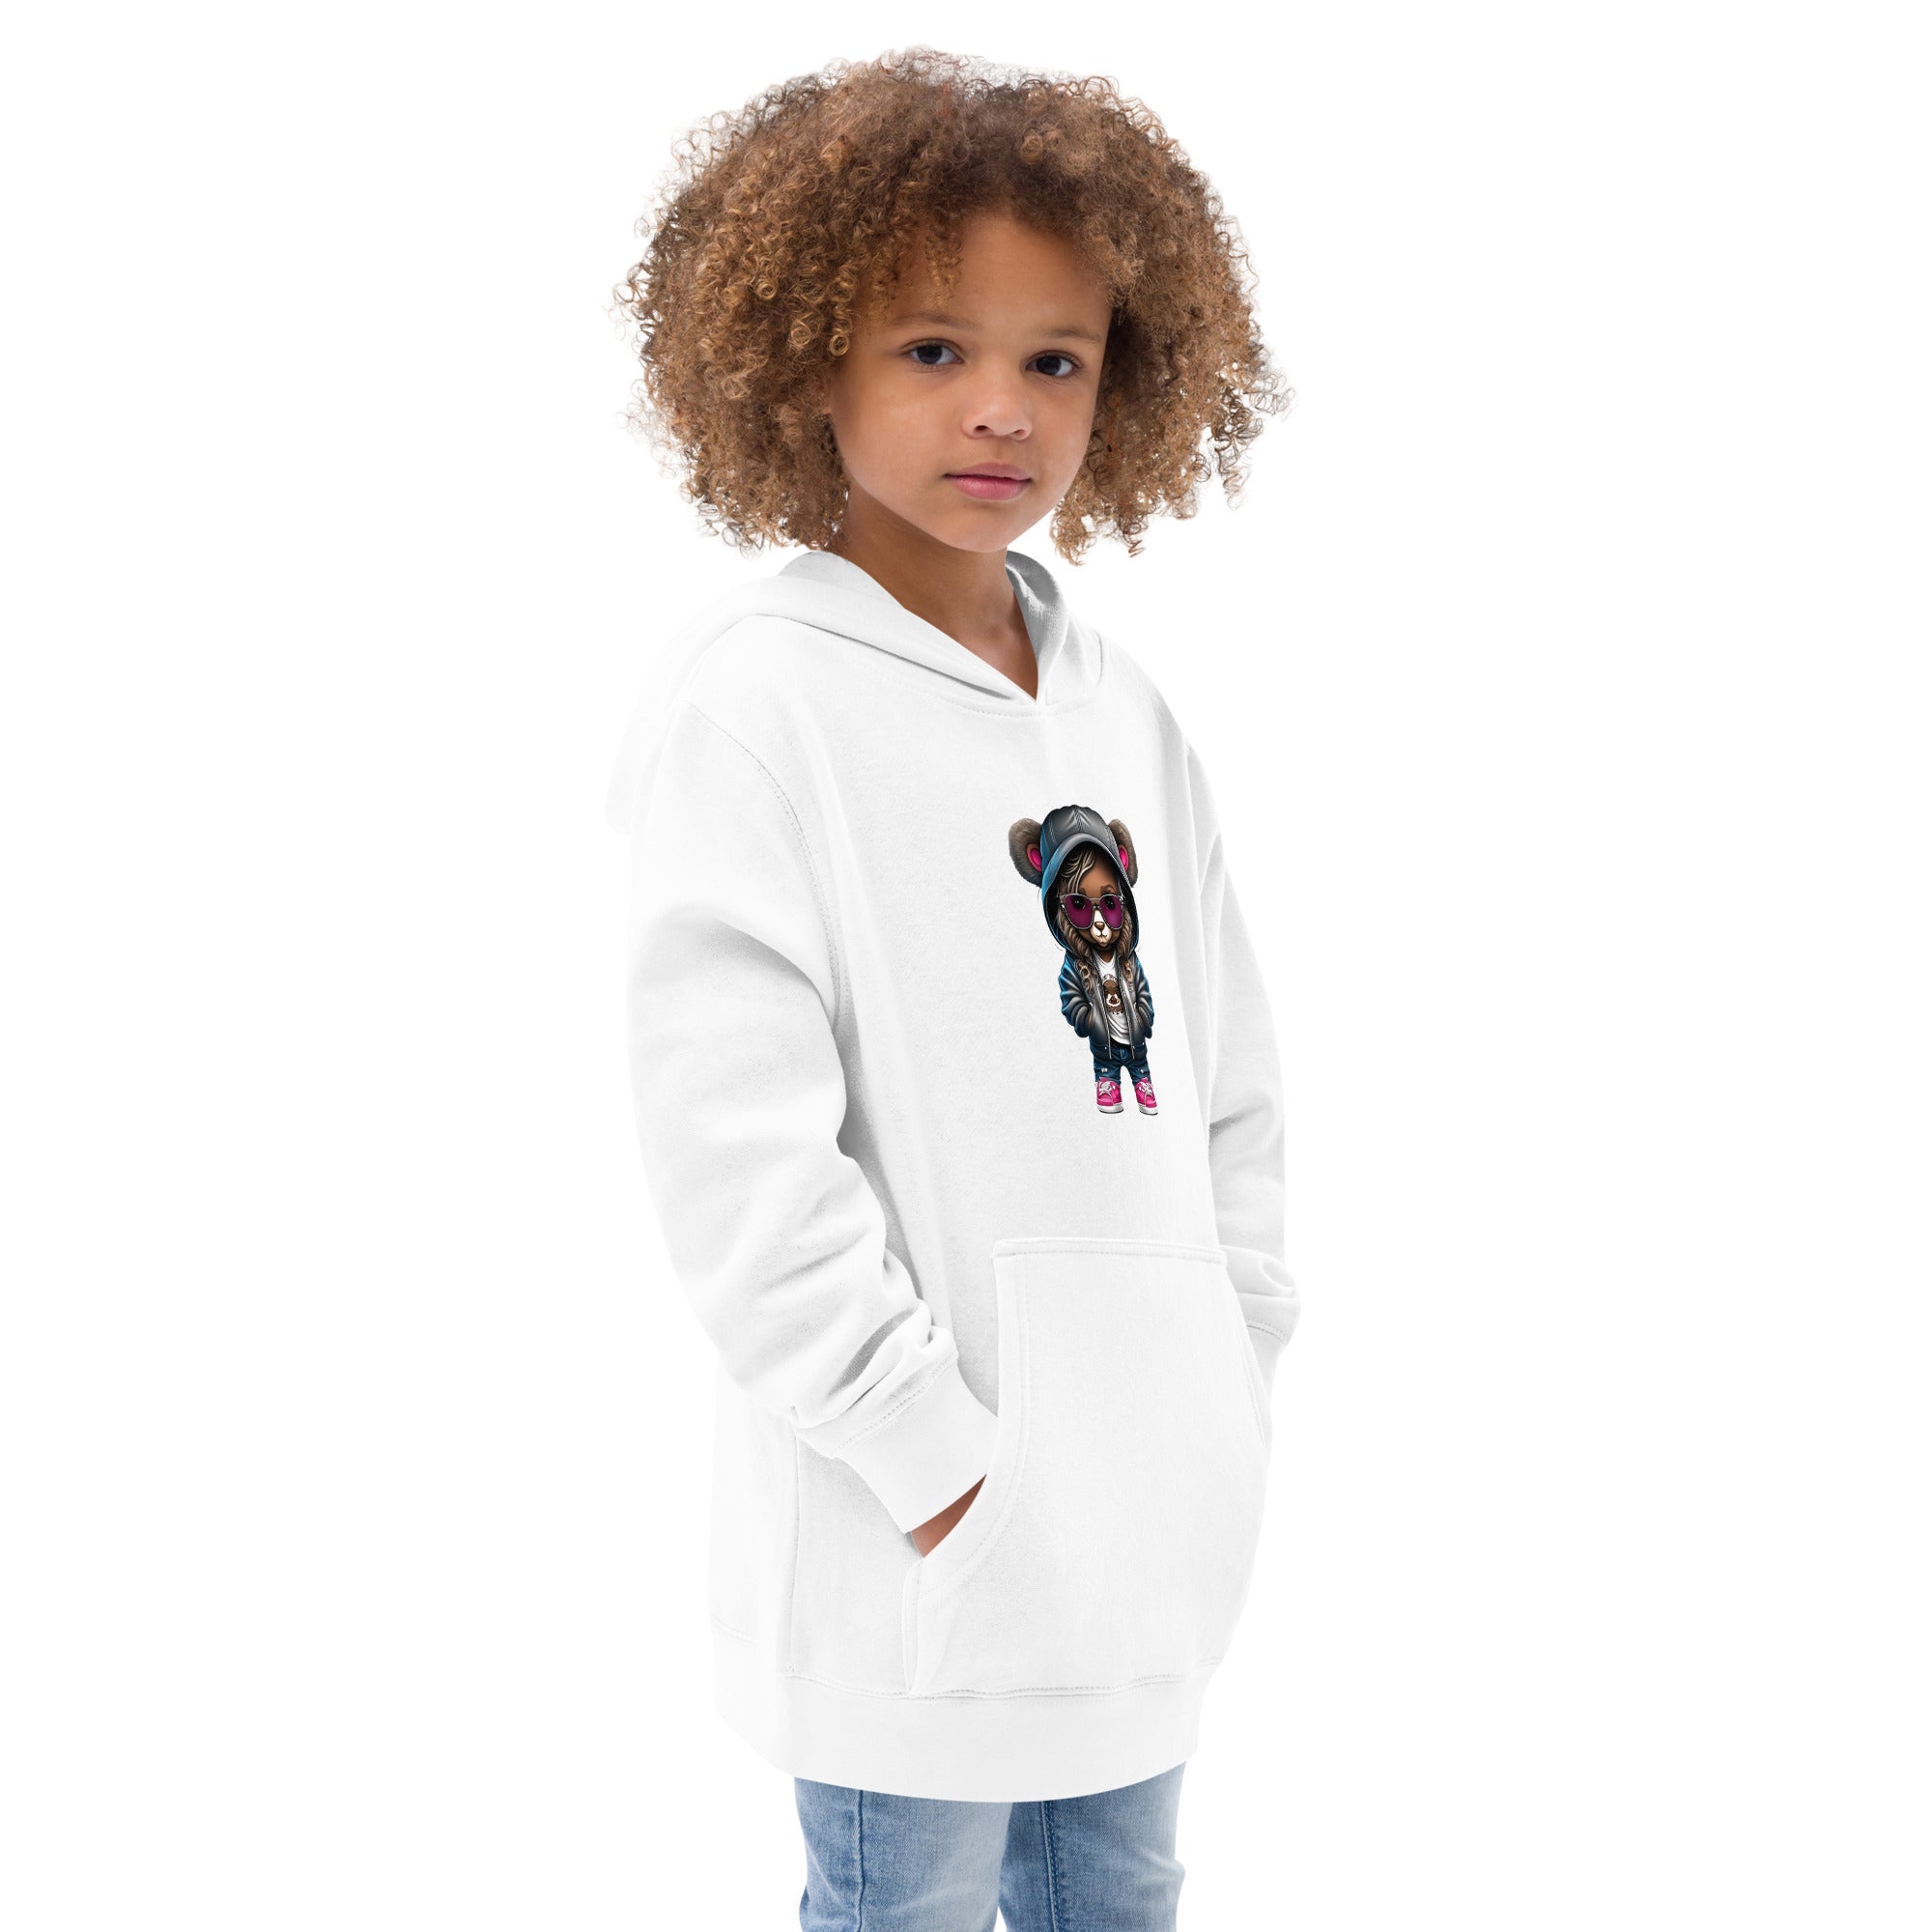 Kids Graphic Design fleece hoodie